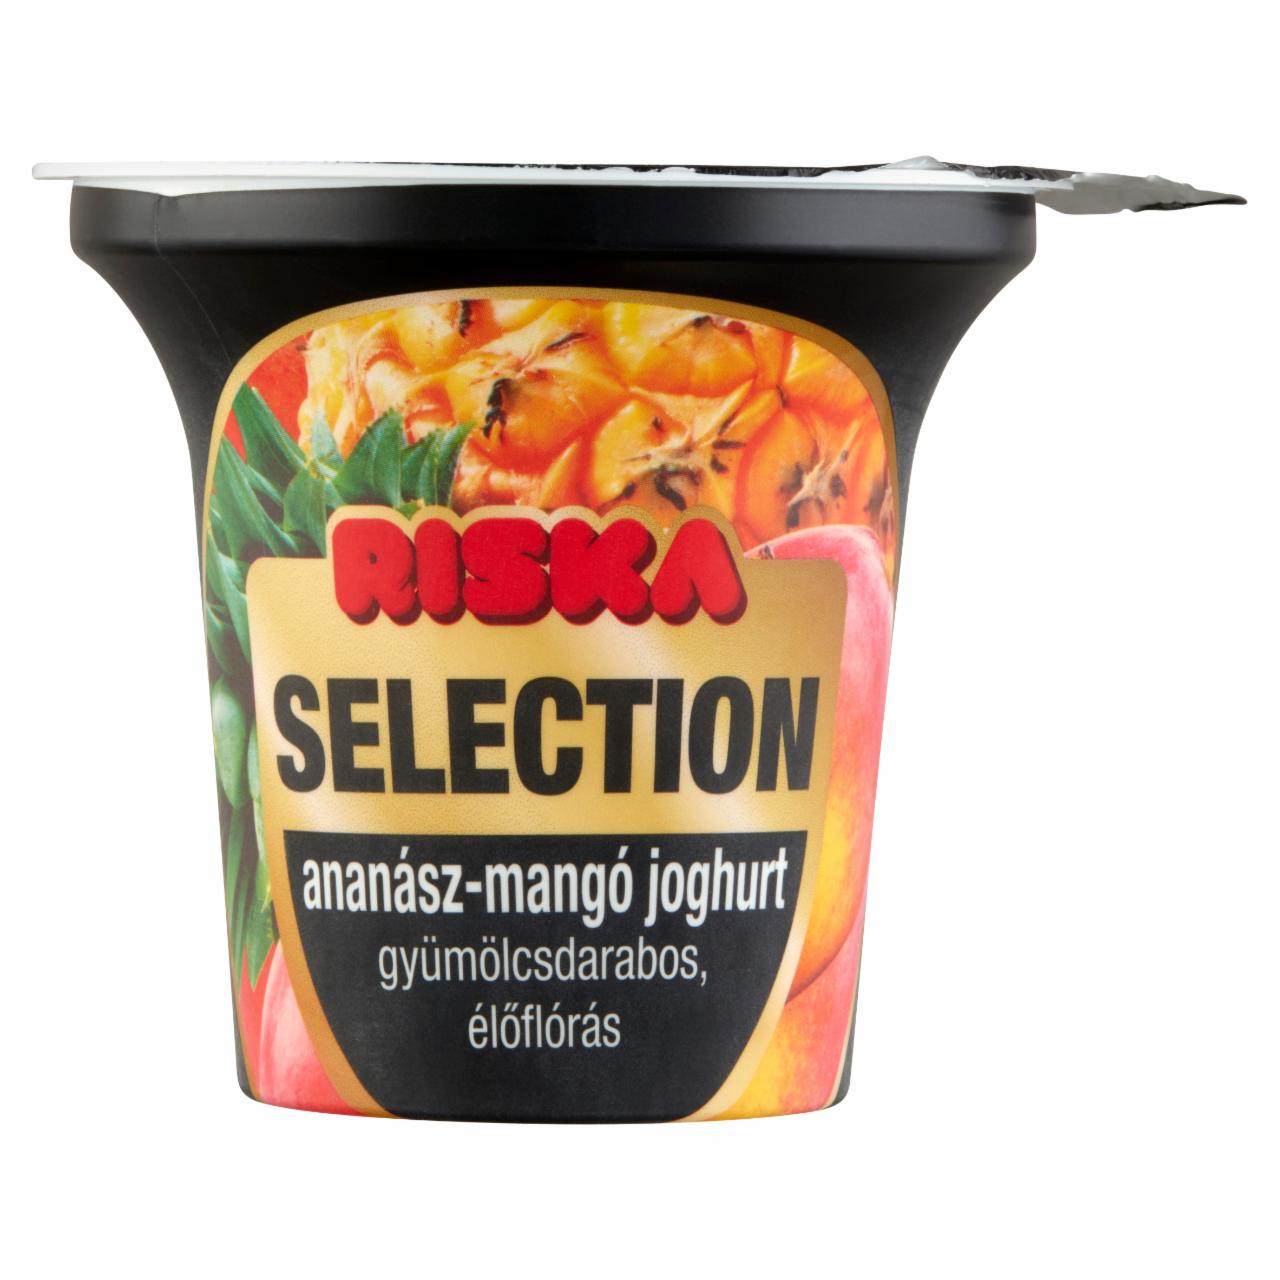 Képek - Riska Selection élőflórás, ananász-mangó gyümölcsdarabos joghurt 200 g